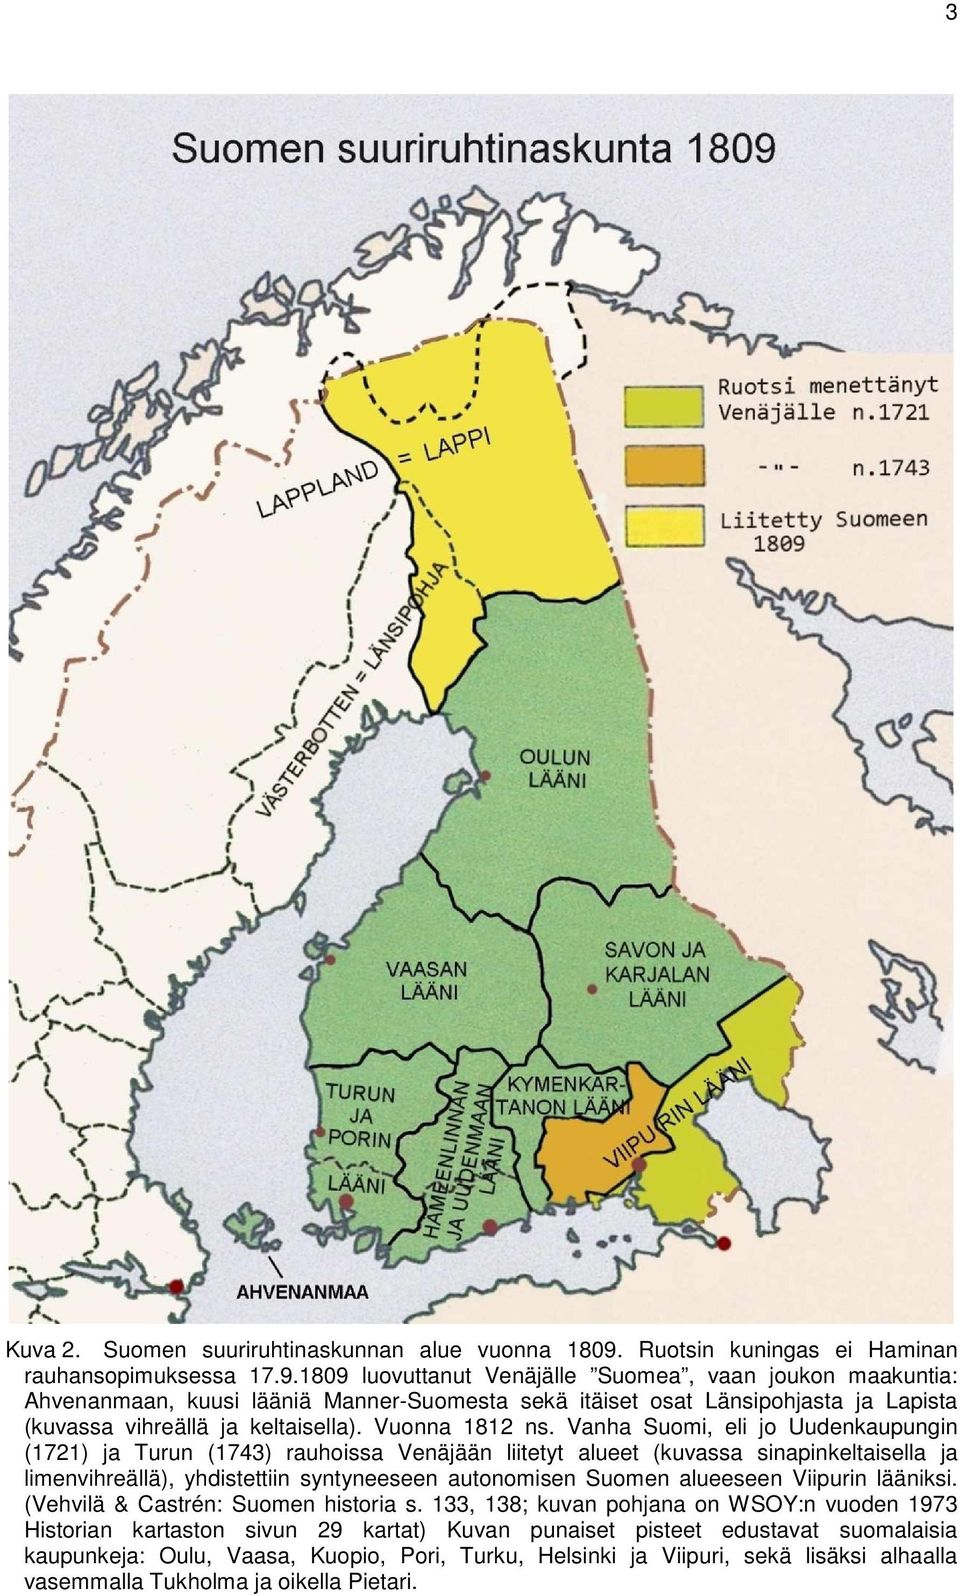 1809 luovuttanut Venäjälle Suomea, vaan joukon maakuntia: Ahvenanmaan, kuusi lääniä Manner-Suomesta sekä itäiset osat Länsipohjasta ja Lapista (kuvassa vihreällä ja keltaisella). Vuonna 1812 ns.